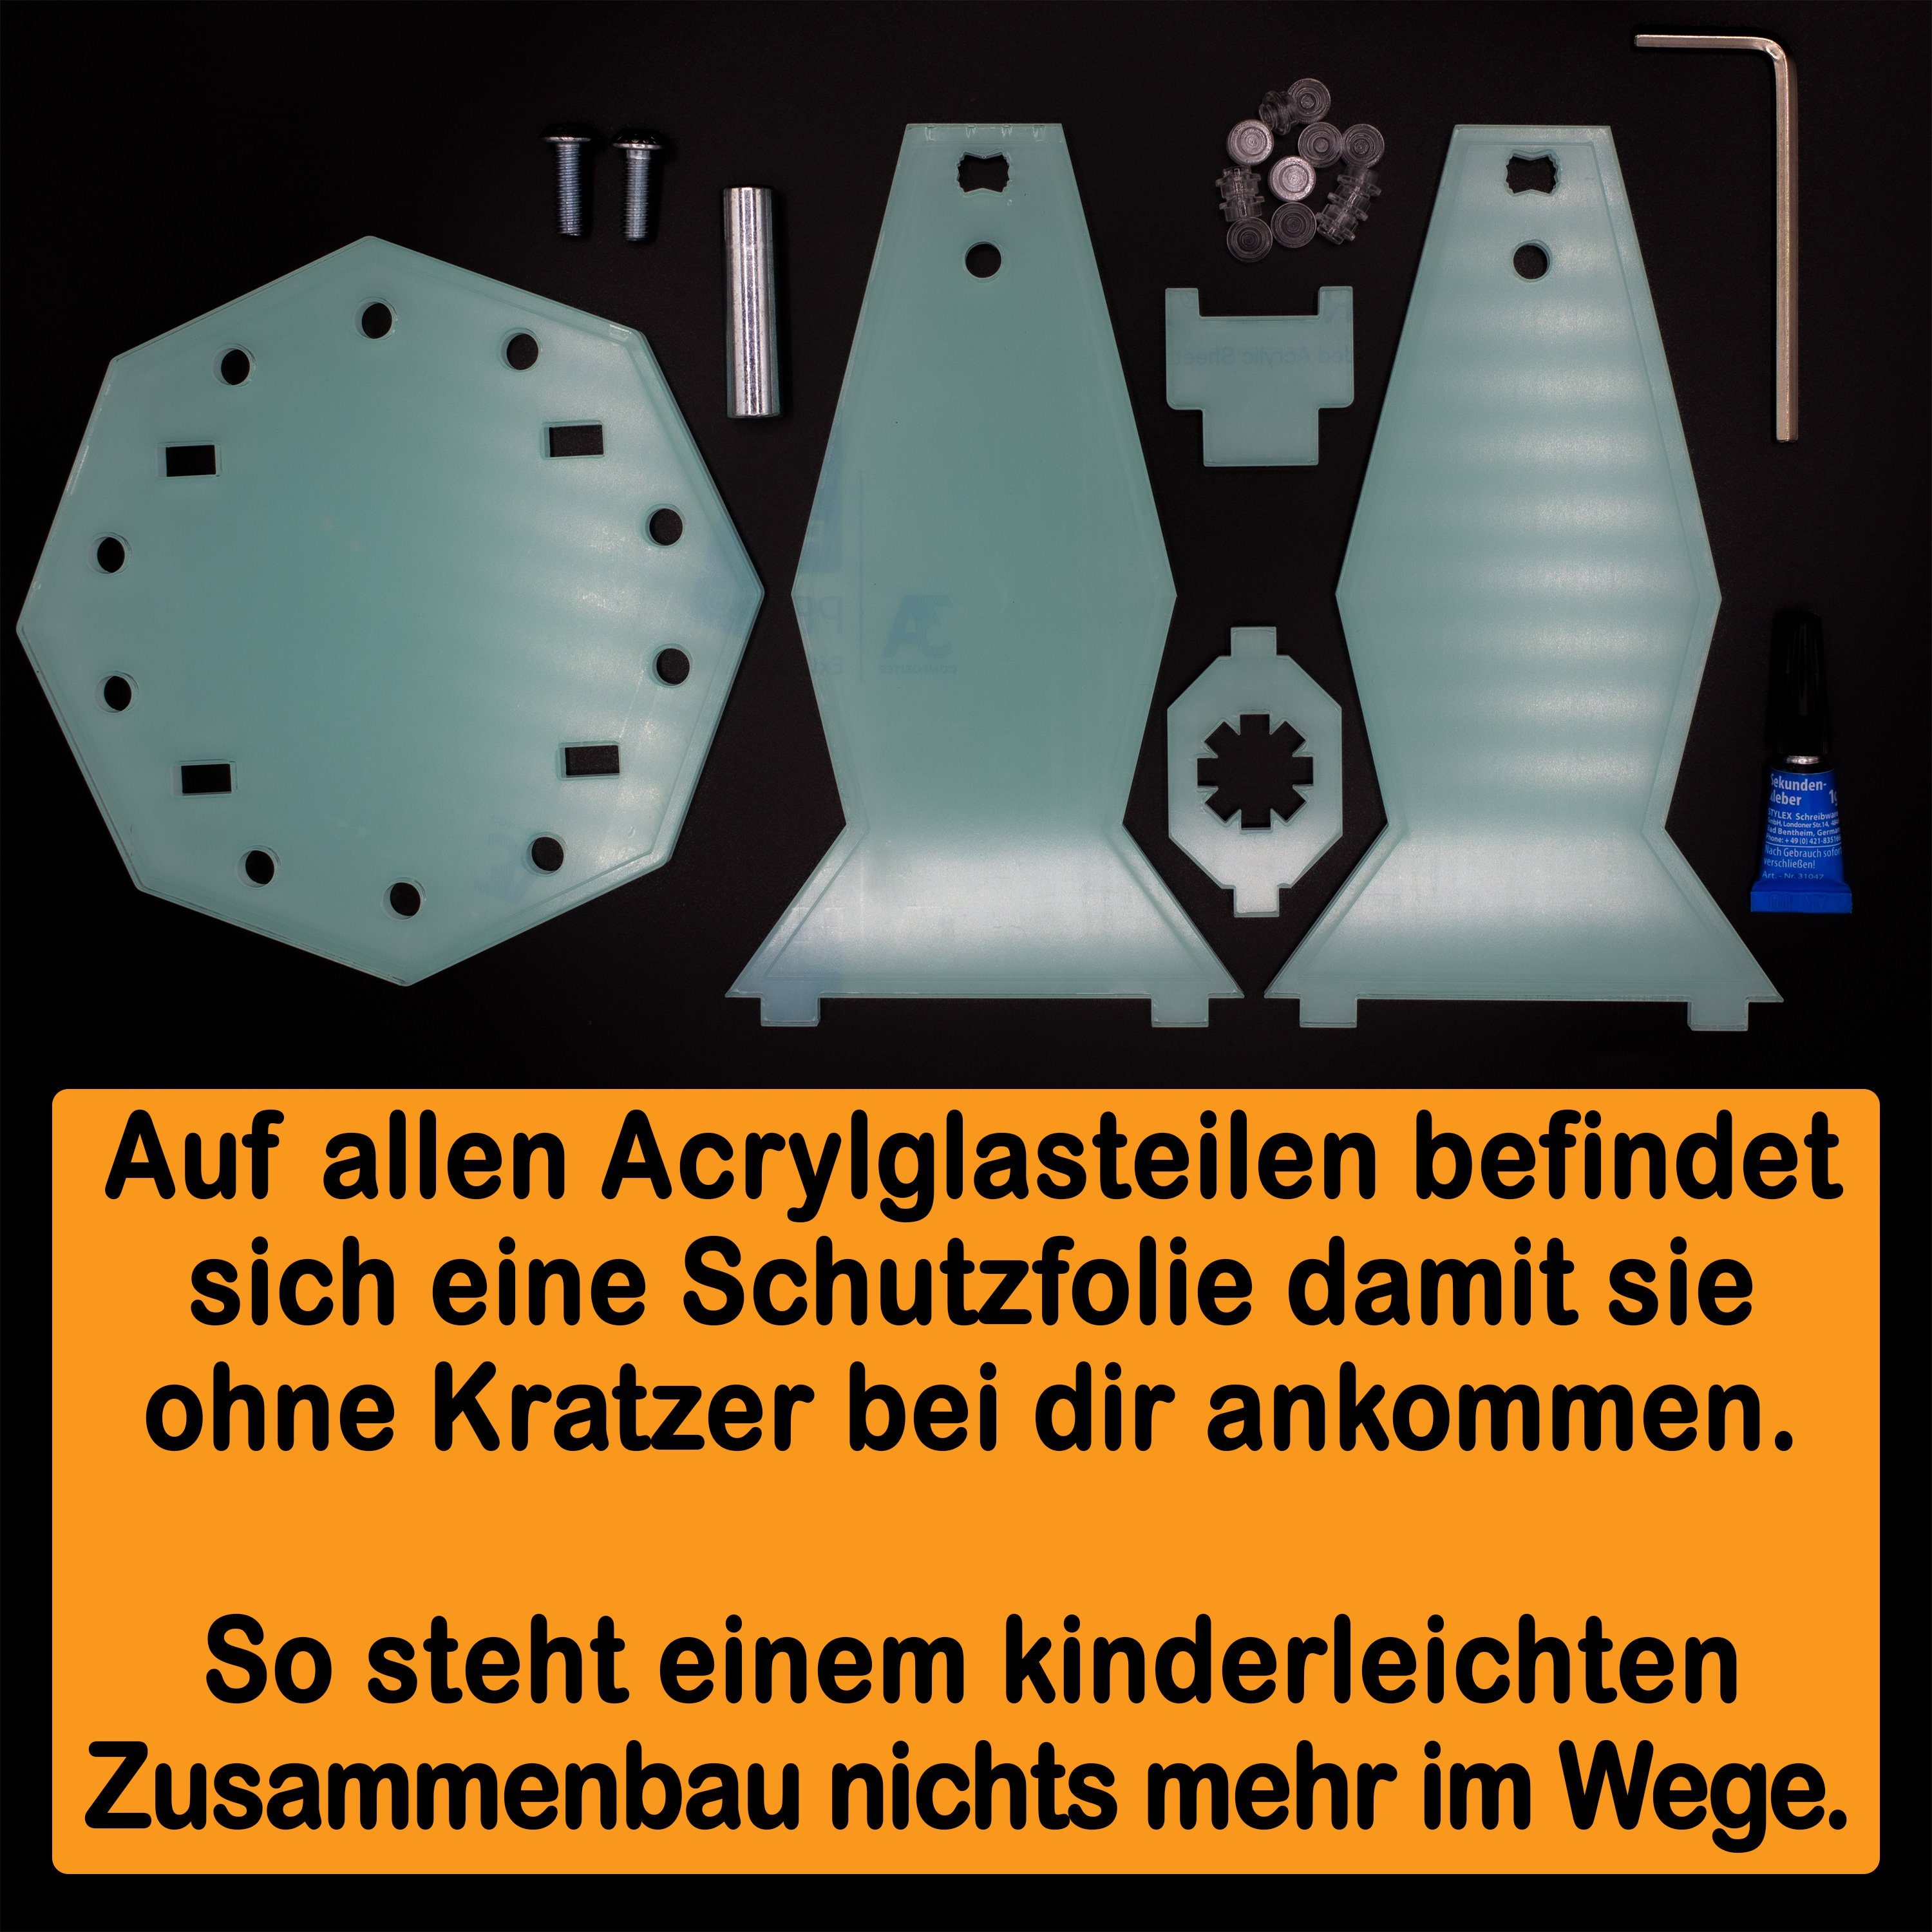 AREA17 Standfuß Acryl Display 75147 LEGO Star Winkel zum für Germany einstellbar, selbst zusammenbauen), Scavenger (verschiedene Positionen Made Stand in und 100